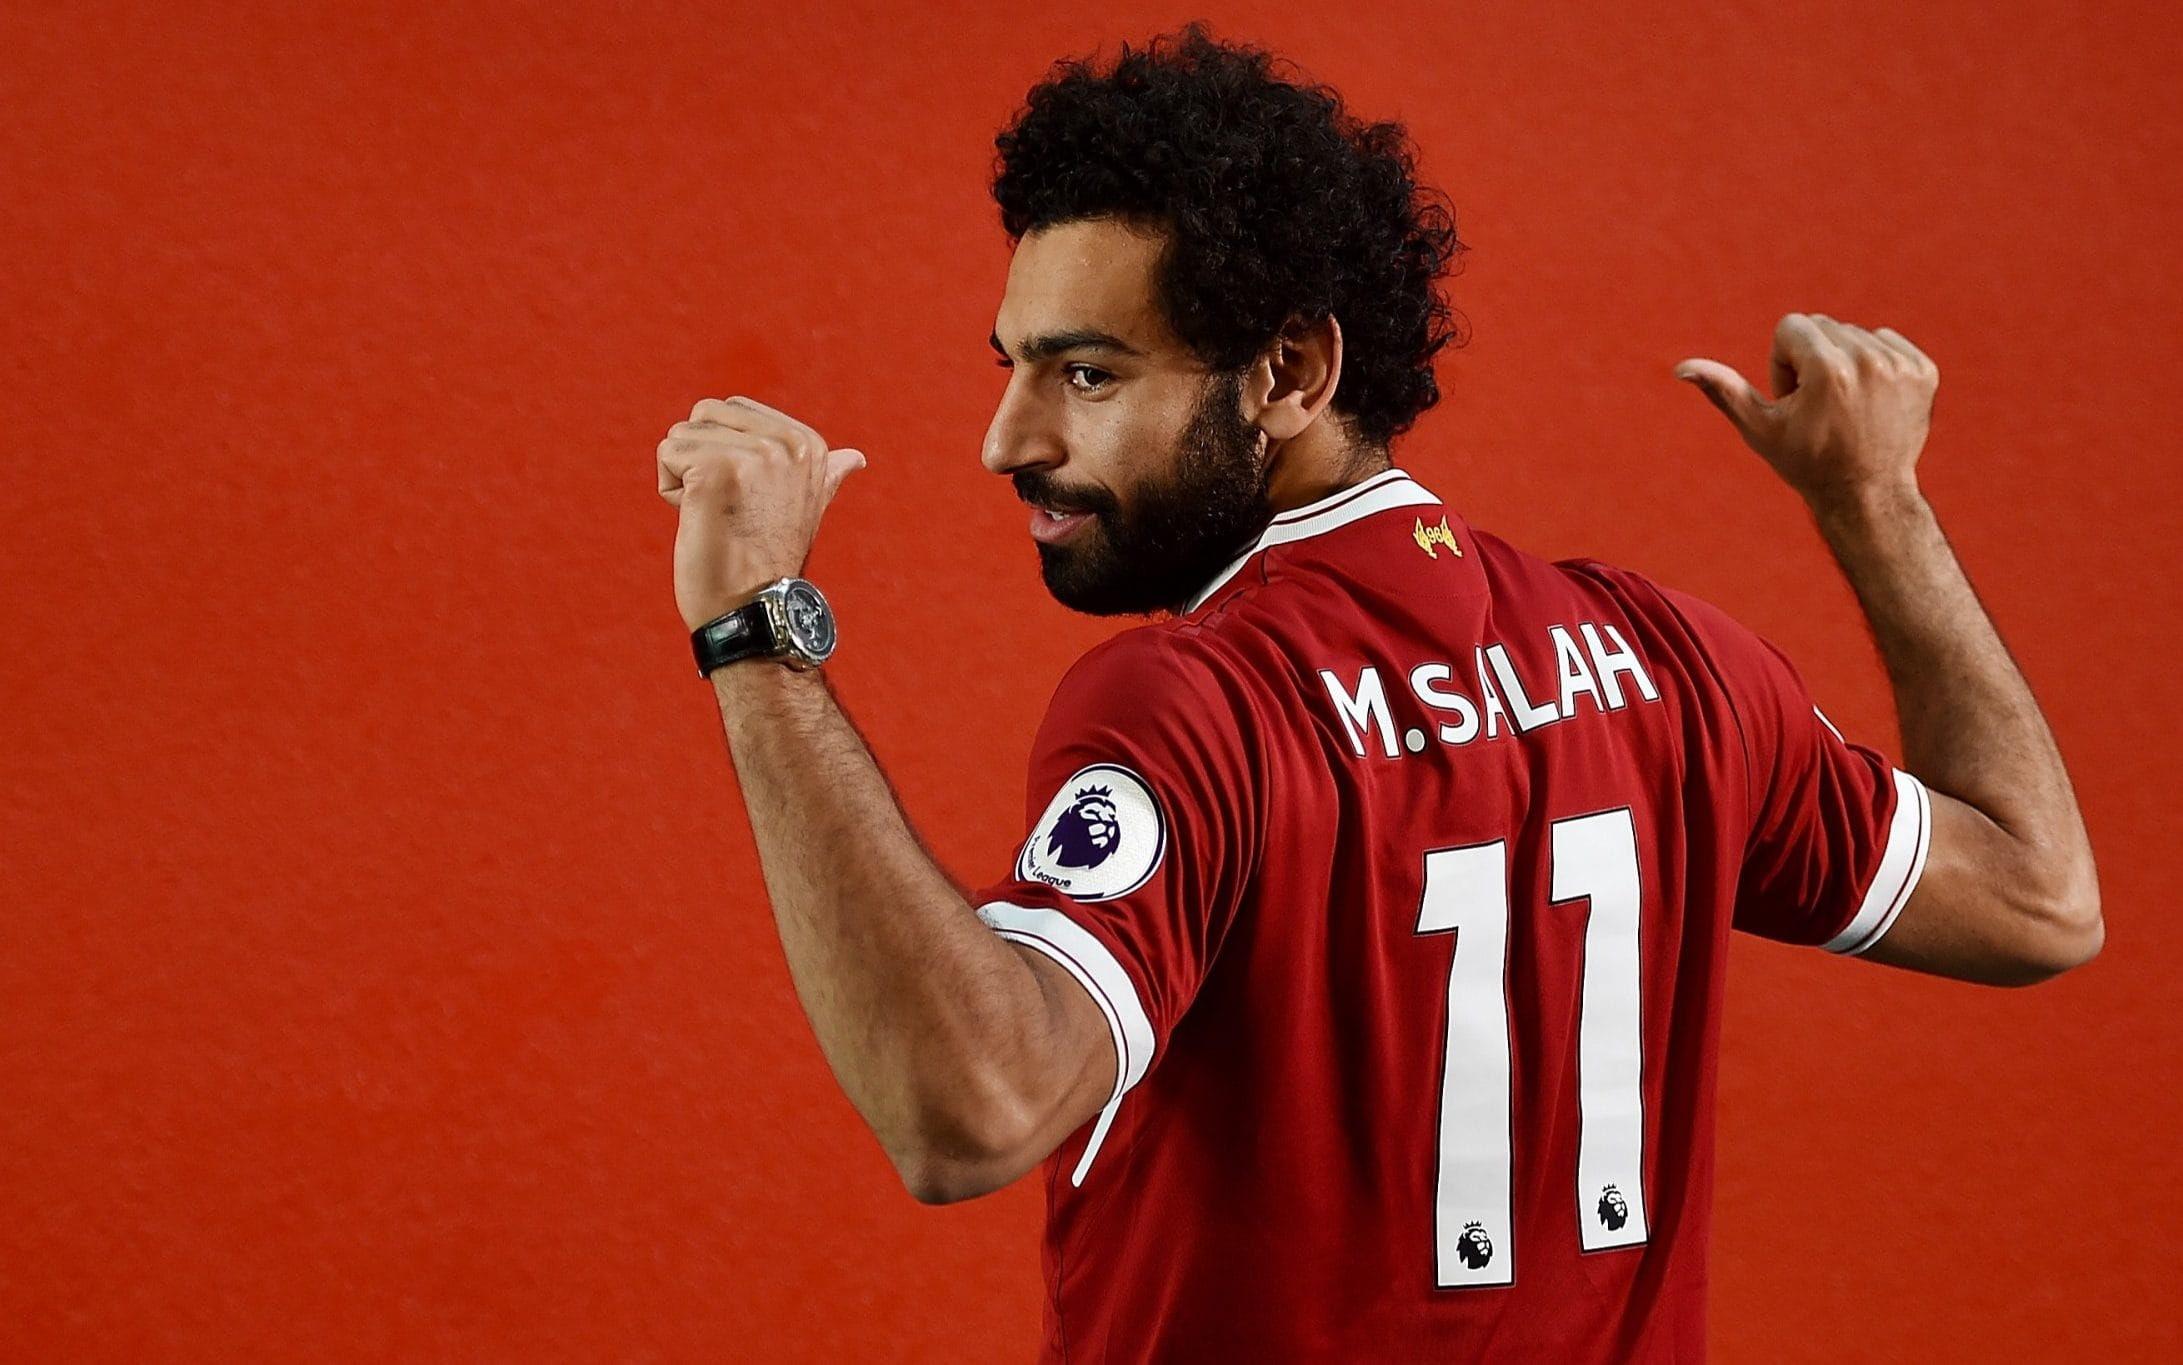 HD wallpaper: Soccer, Mohamed Salah, Egyptian, Liverpool